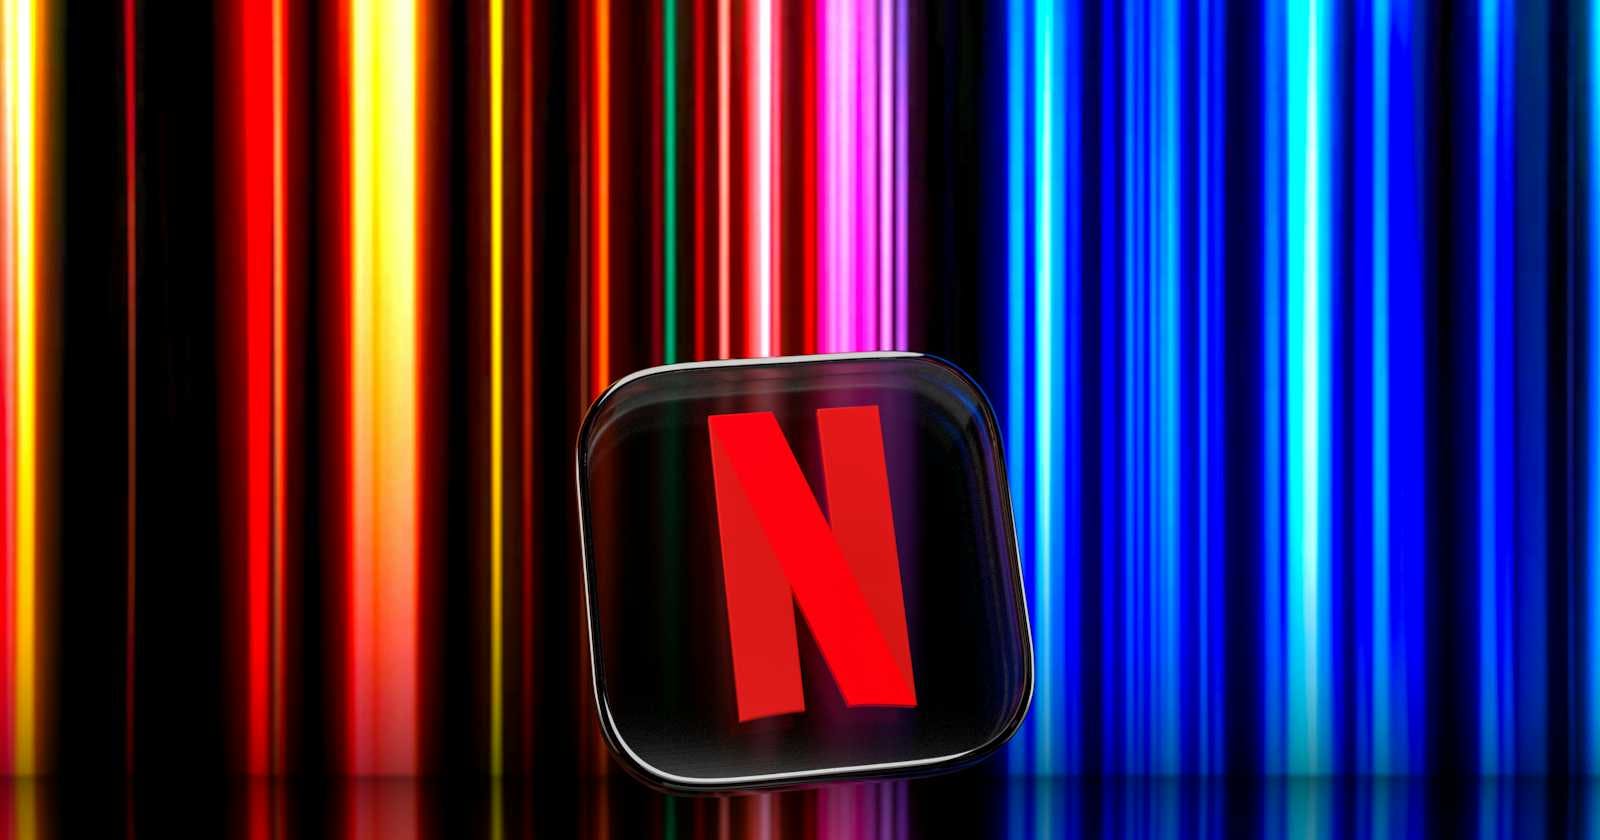 Clone Netflix "Hello World" app using Node-Express